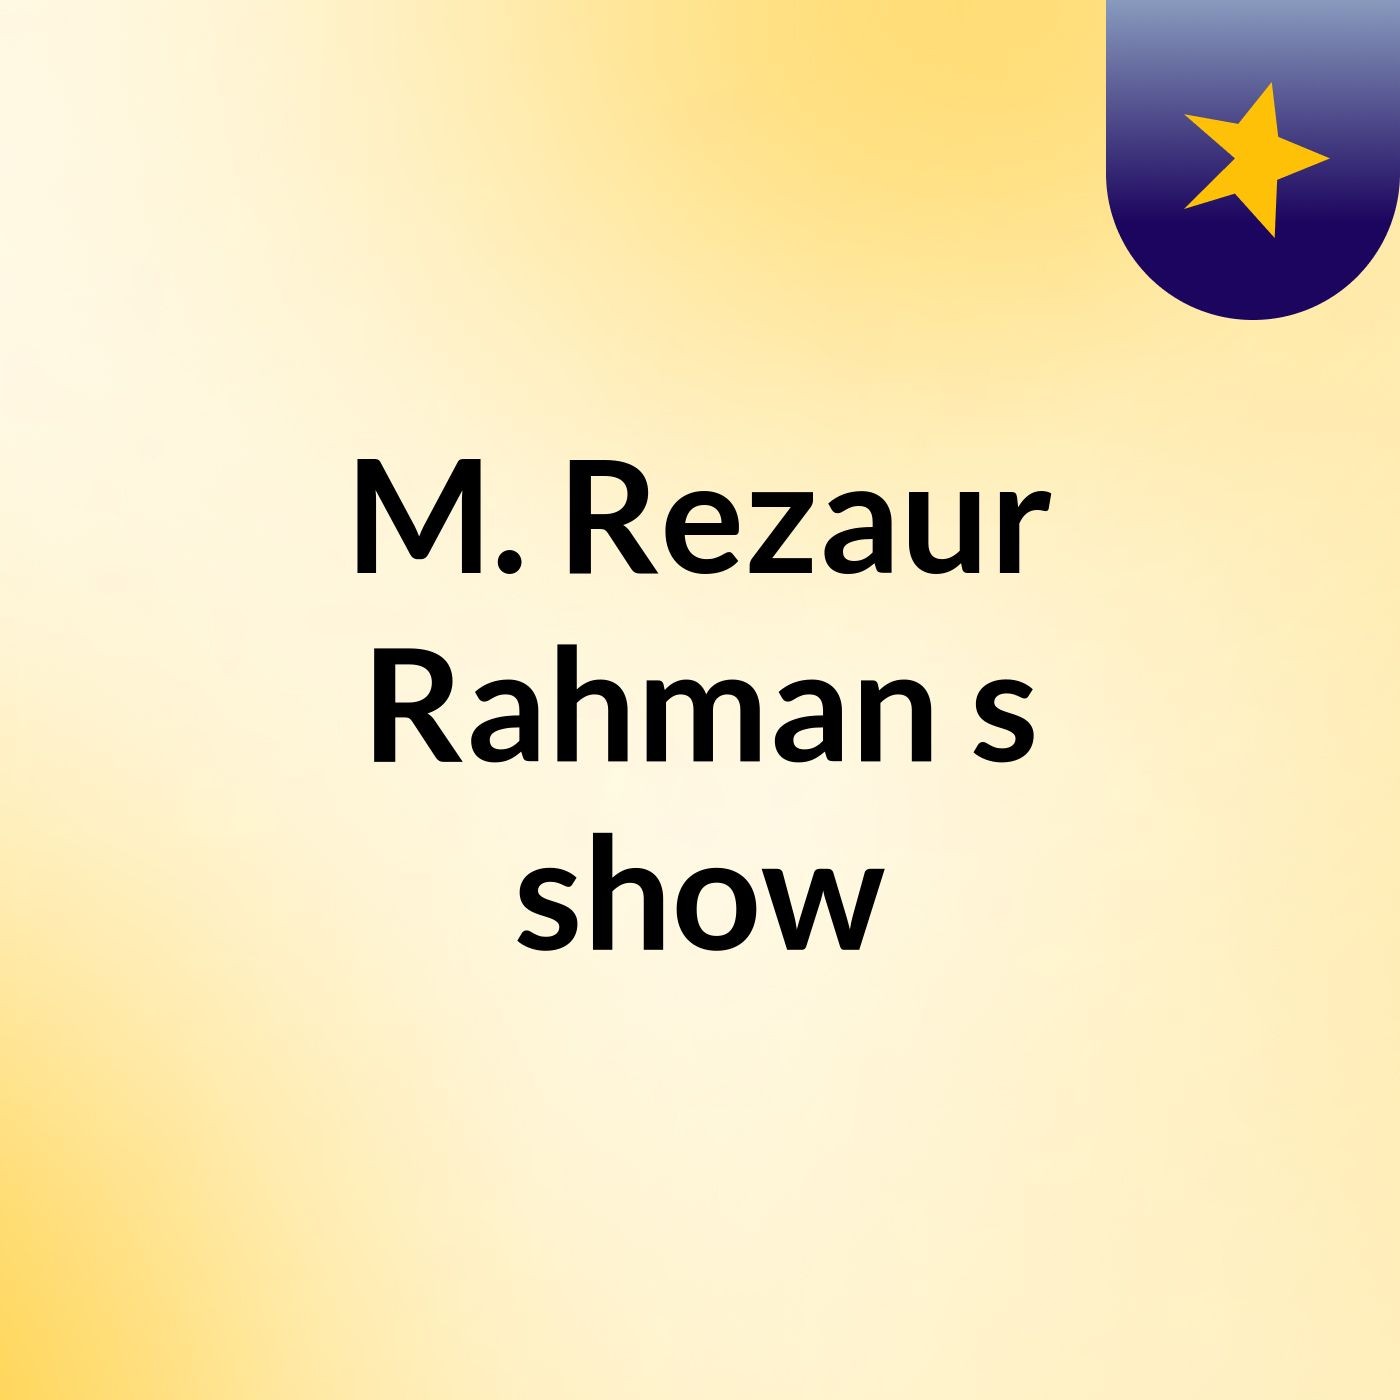 Episode 5 - M. Rezaur Rahman's show